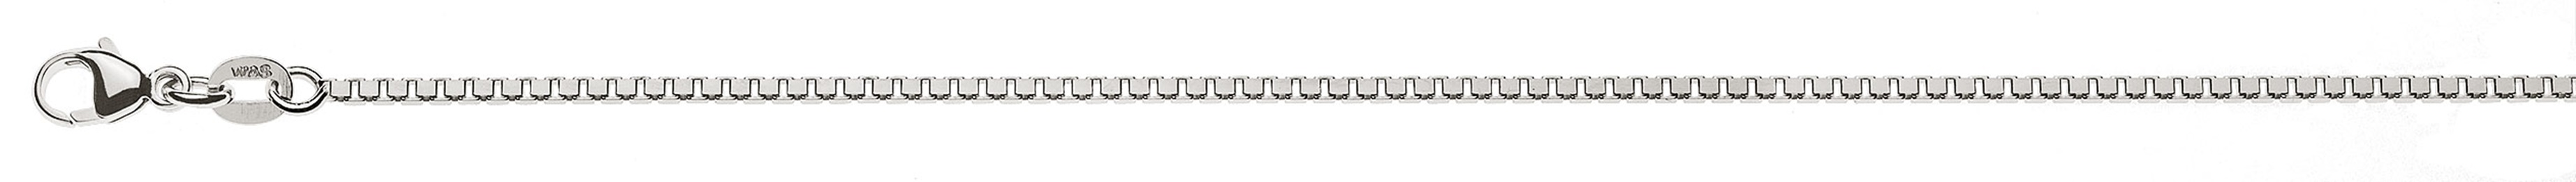 AURONOS Prestige Halskette Weissgold 18K Venezianerkette diamantiert 55cm 1.4mm